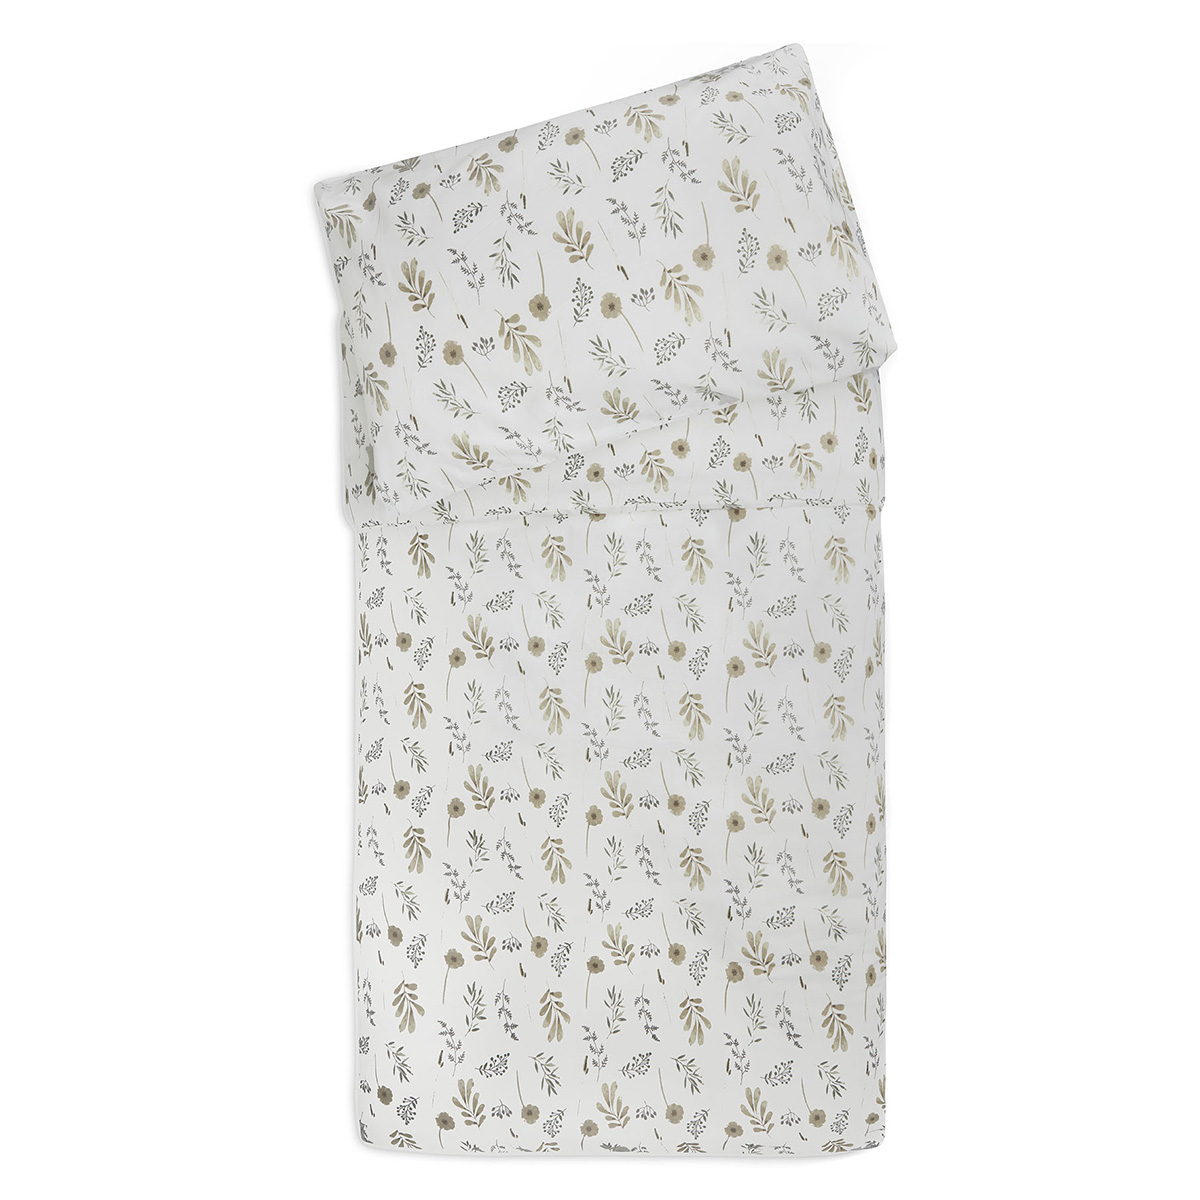 Couette 100x140 Blanc - Linge de lit - Textile lit bébé BUT